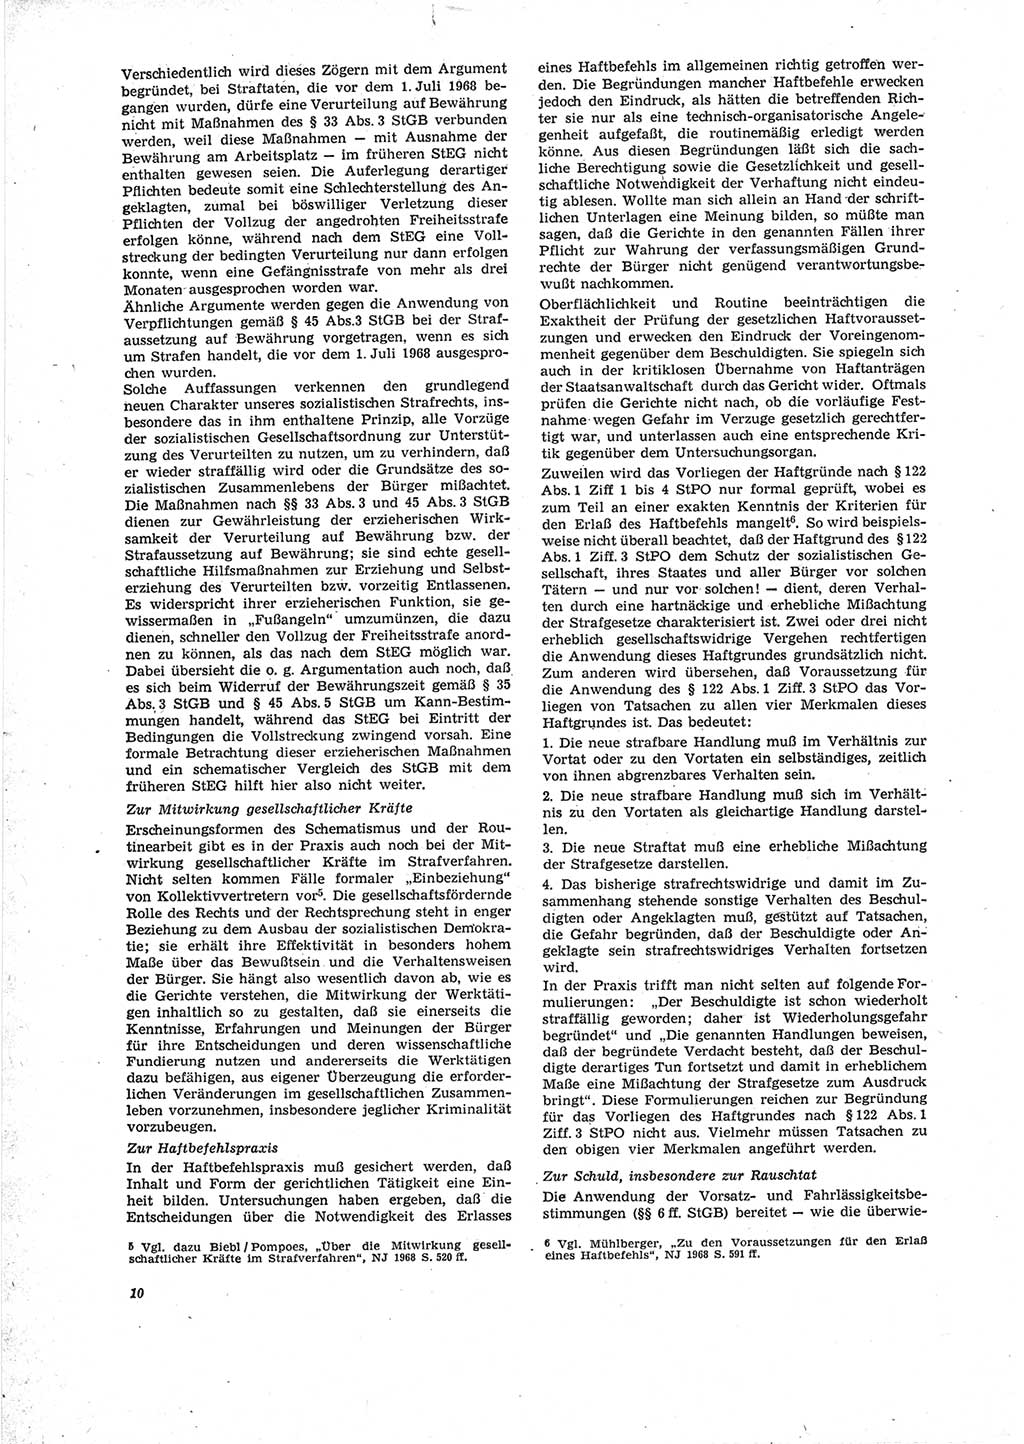 Neue Justiz (NJ), Zeitschrift für Recht und Rechtswissenschaft [Deutsche Demokratische Republik (DDR)], 23. Jahrgang 1969, Seite 10 (NJ DDR 1969, S. 10)